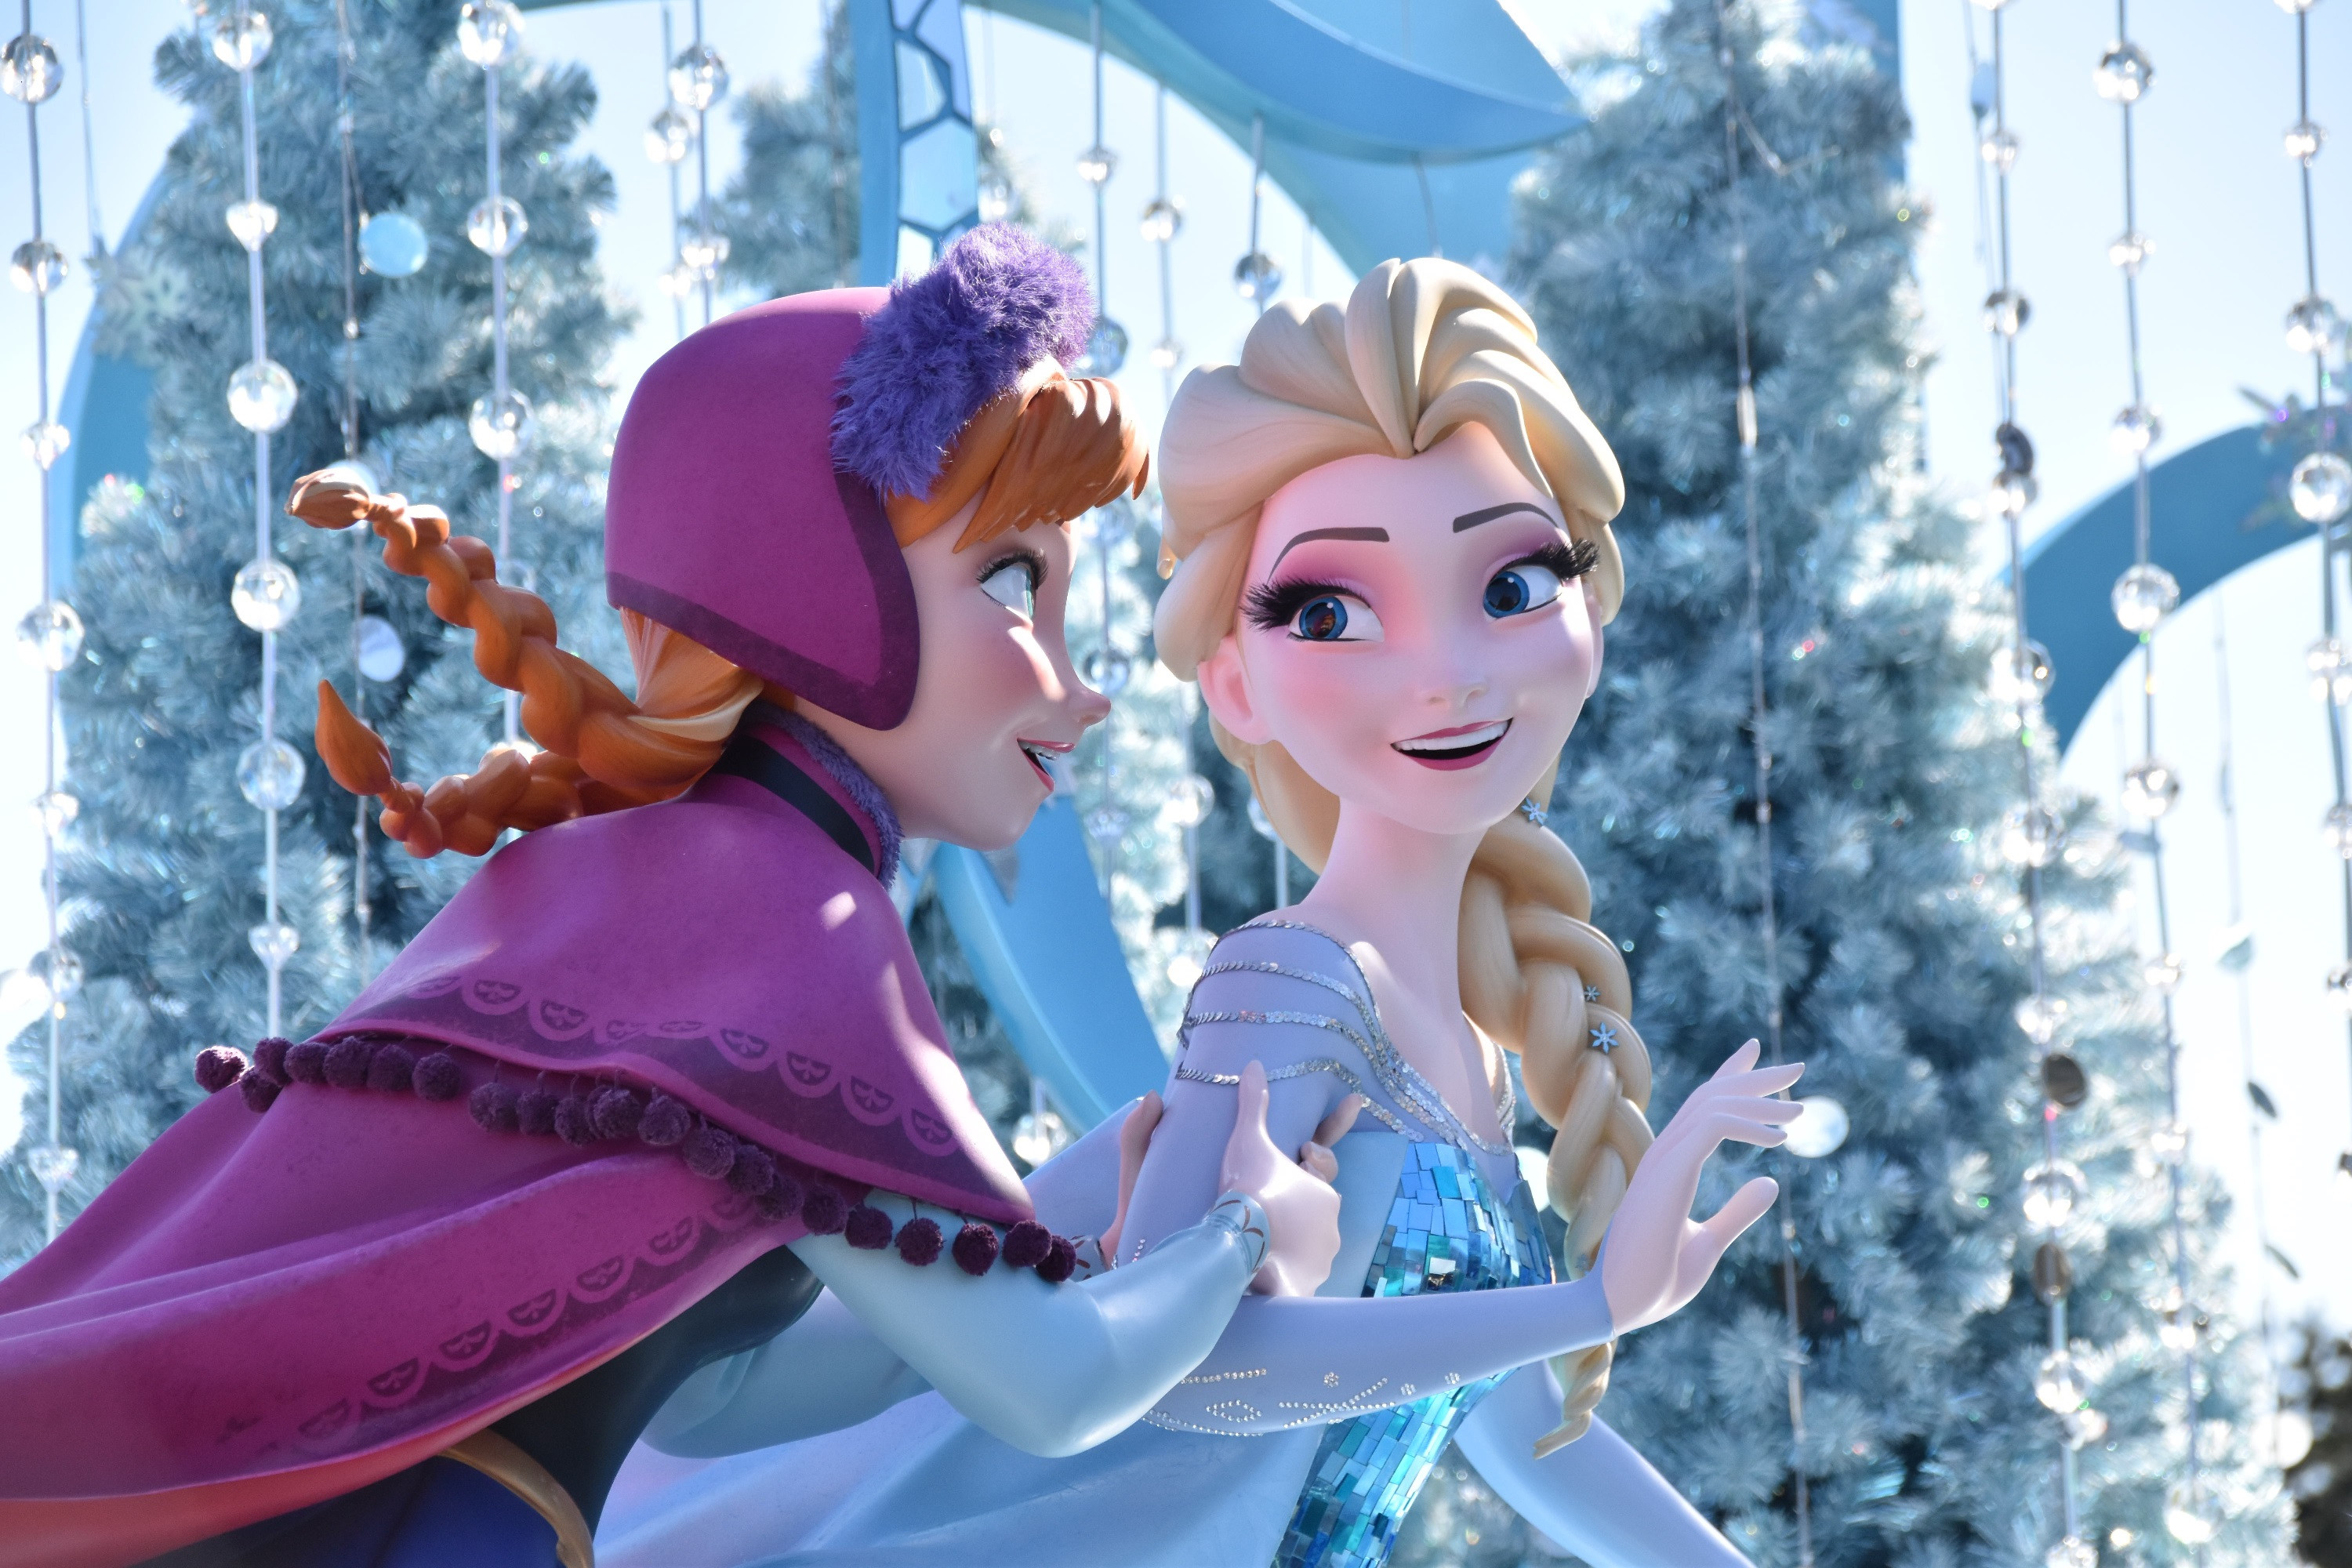 アナと雪の女王 ストーリー キャラクター 続編 アナ雪2 やスピンオフまとめ 大人気となった歌も